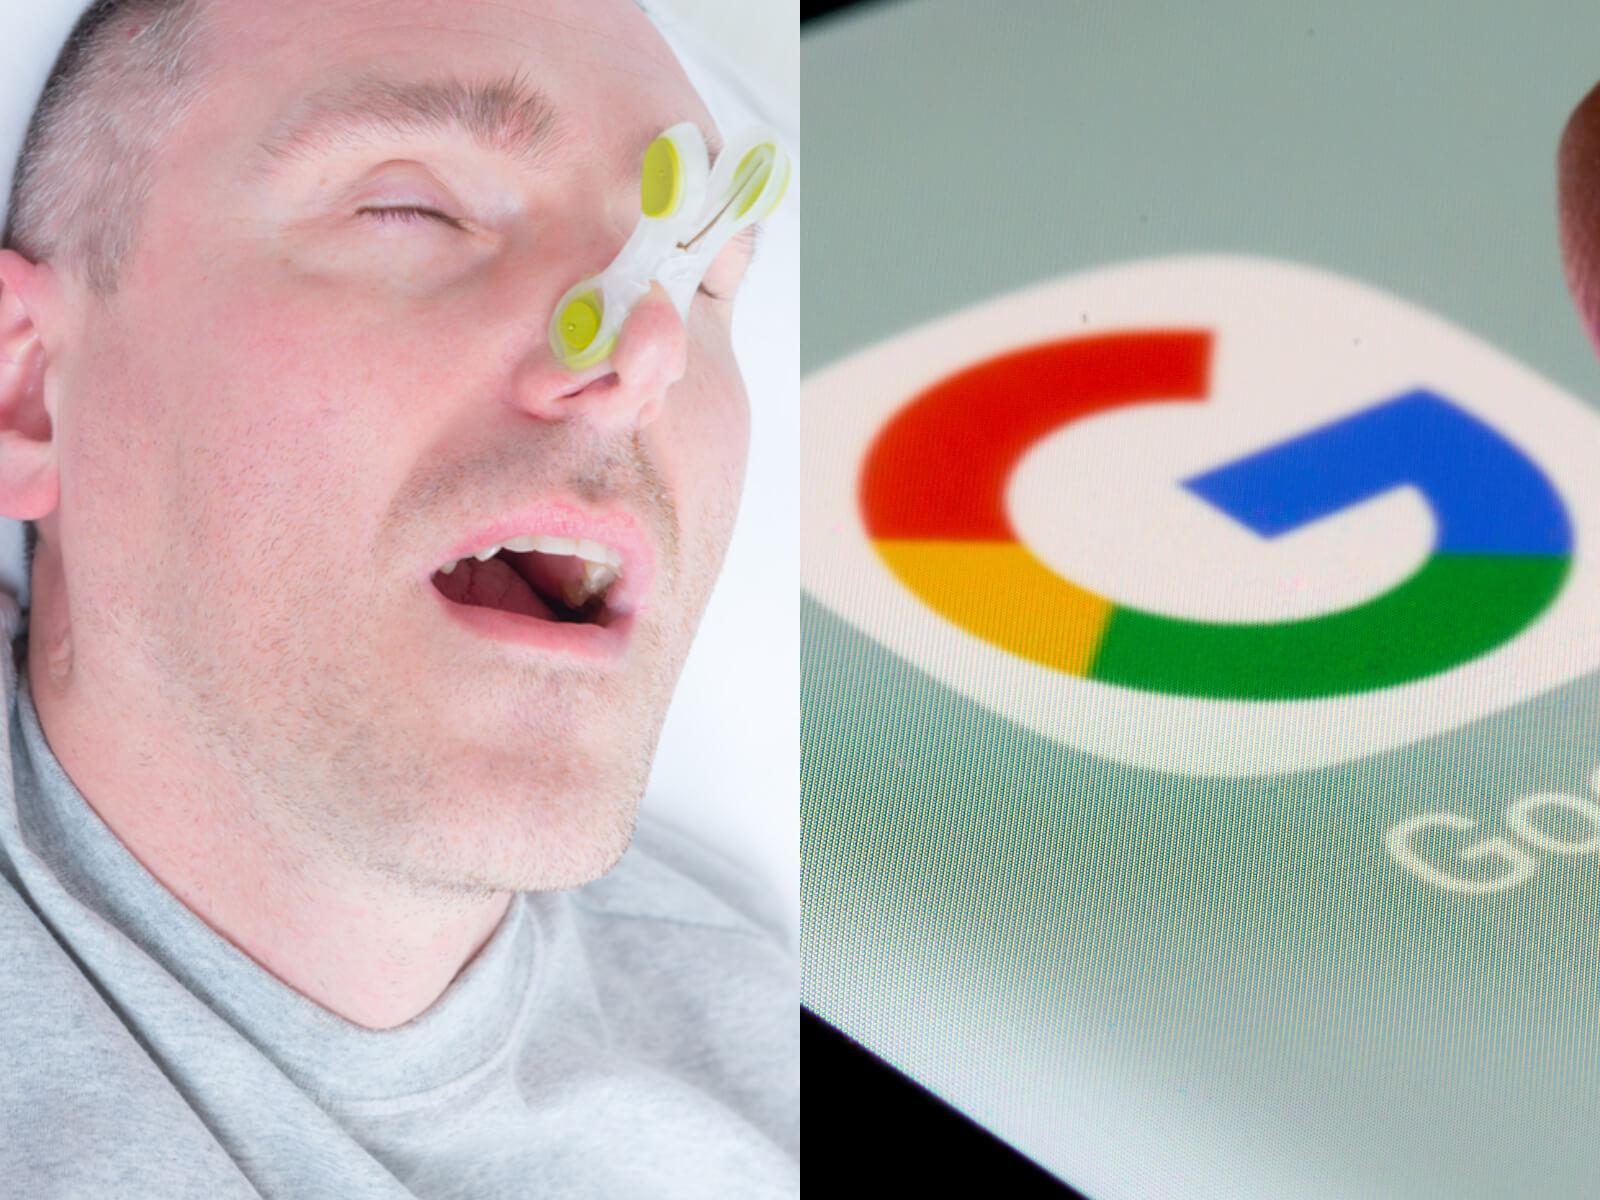 Το-Google health-μπορεί-να δει-πότε-ροχαλίζεις-